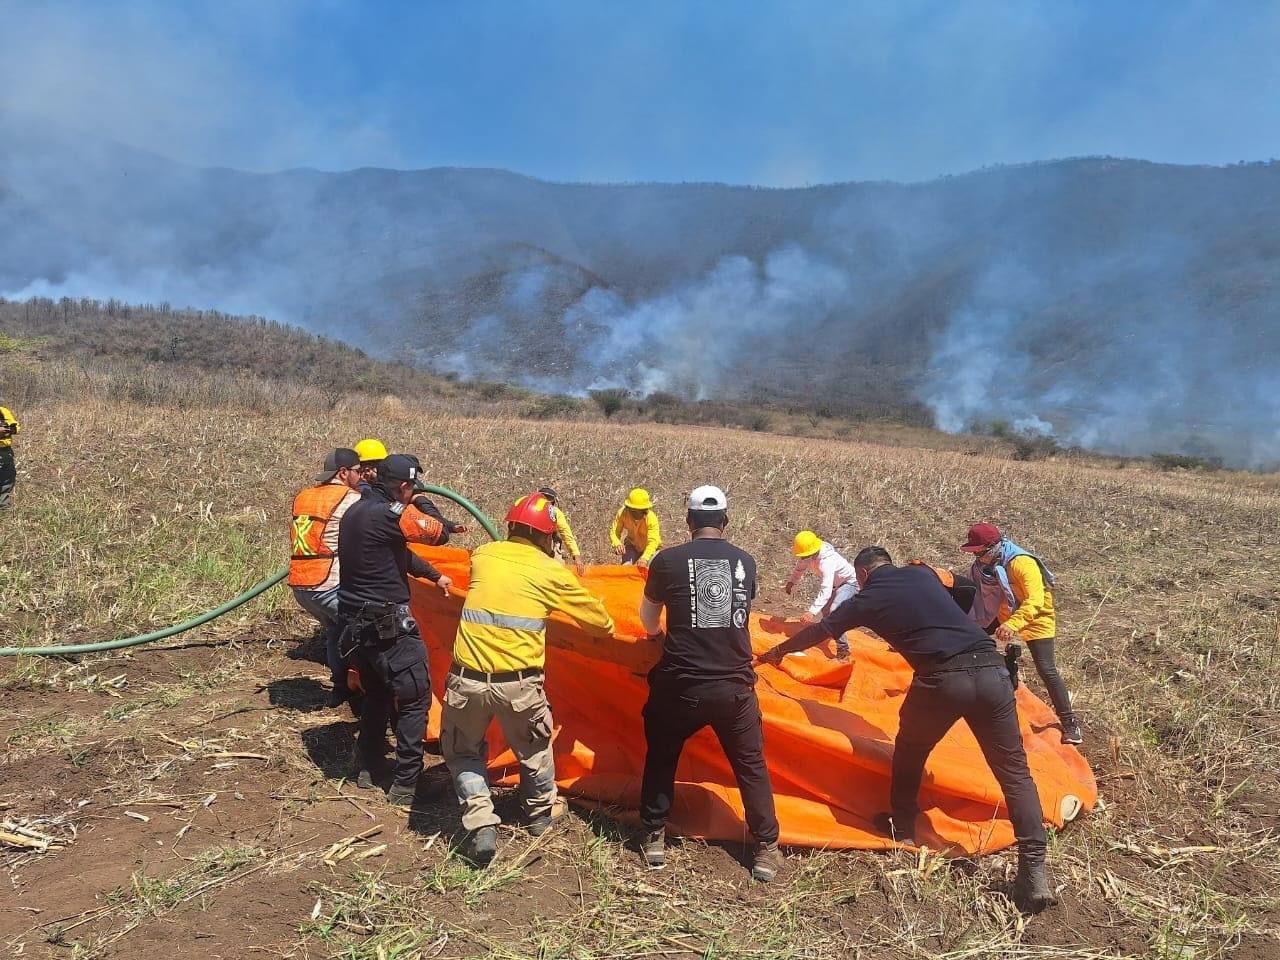 Valiente y ejemplar, la alianza autoridades-sociedad para combatir los incendios forestales: Luis Arturo Santiago